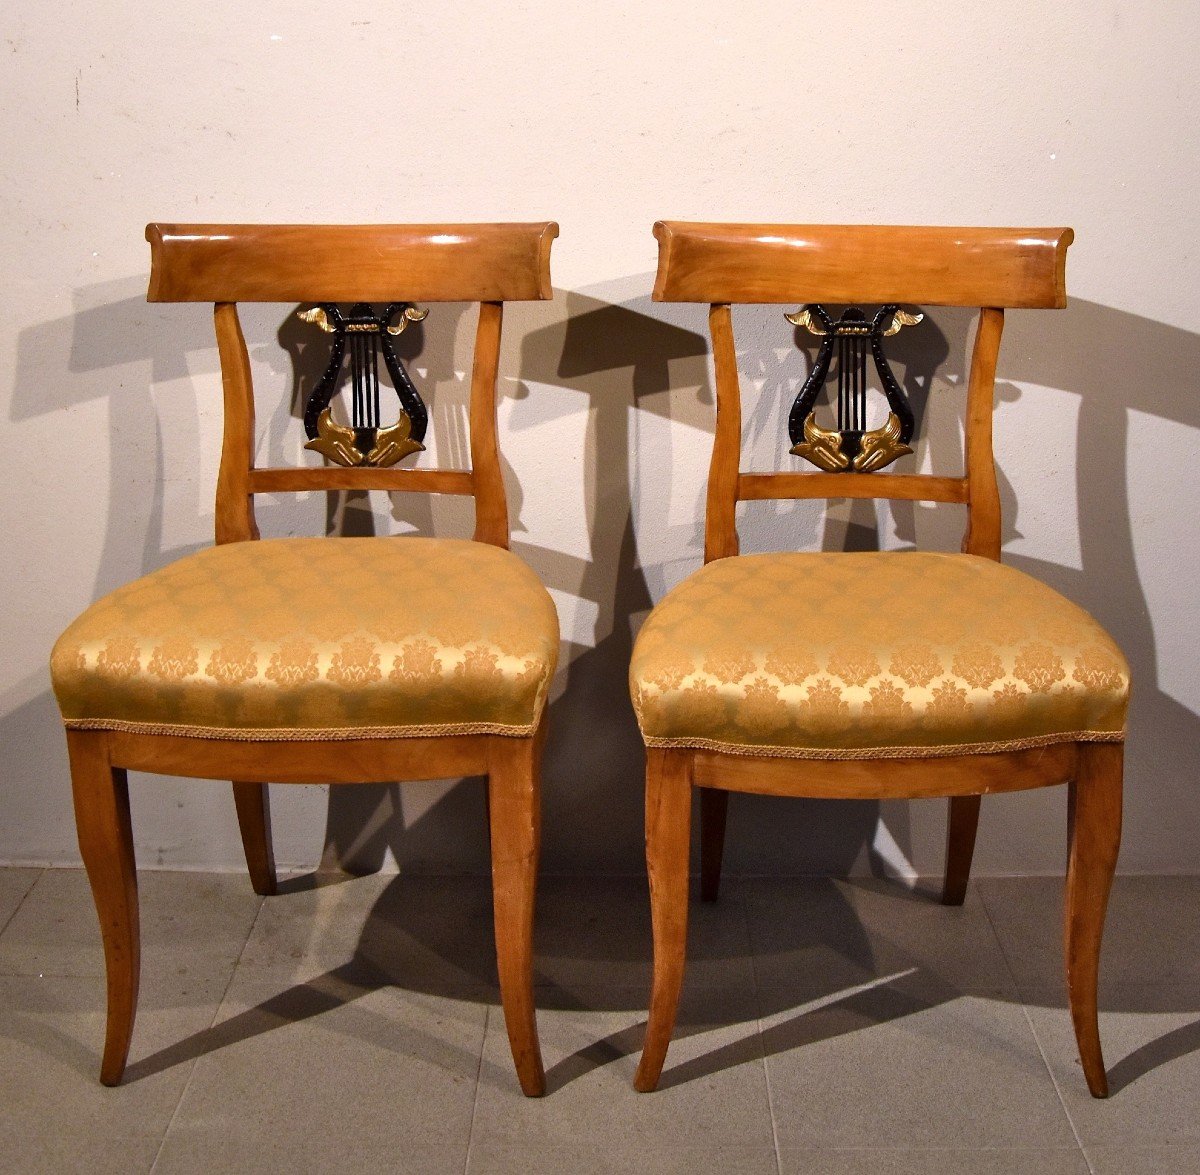 Pair Of Biedermeier Chairs, Germany 19th Century